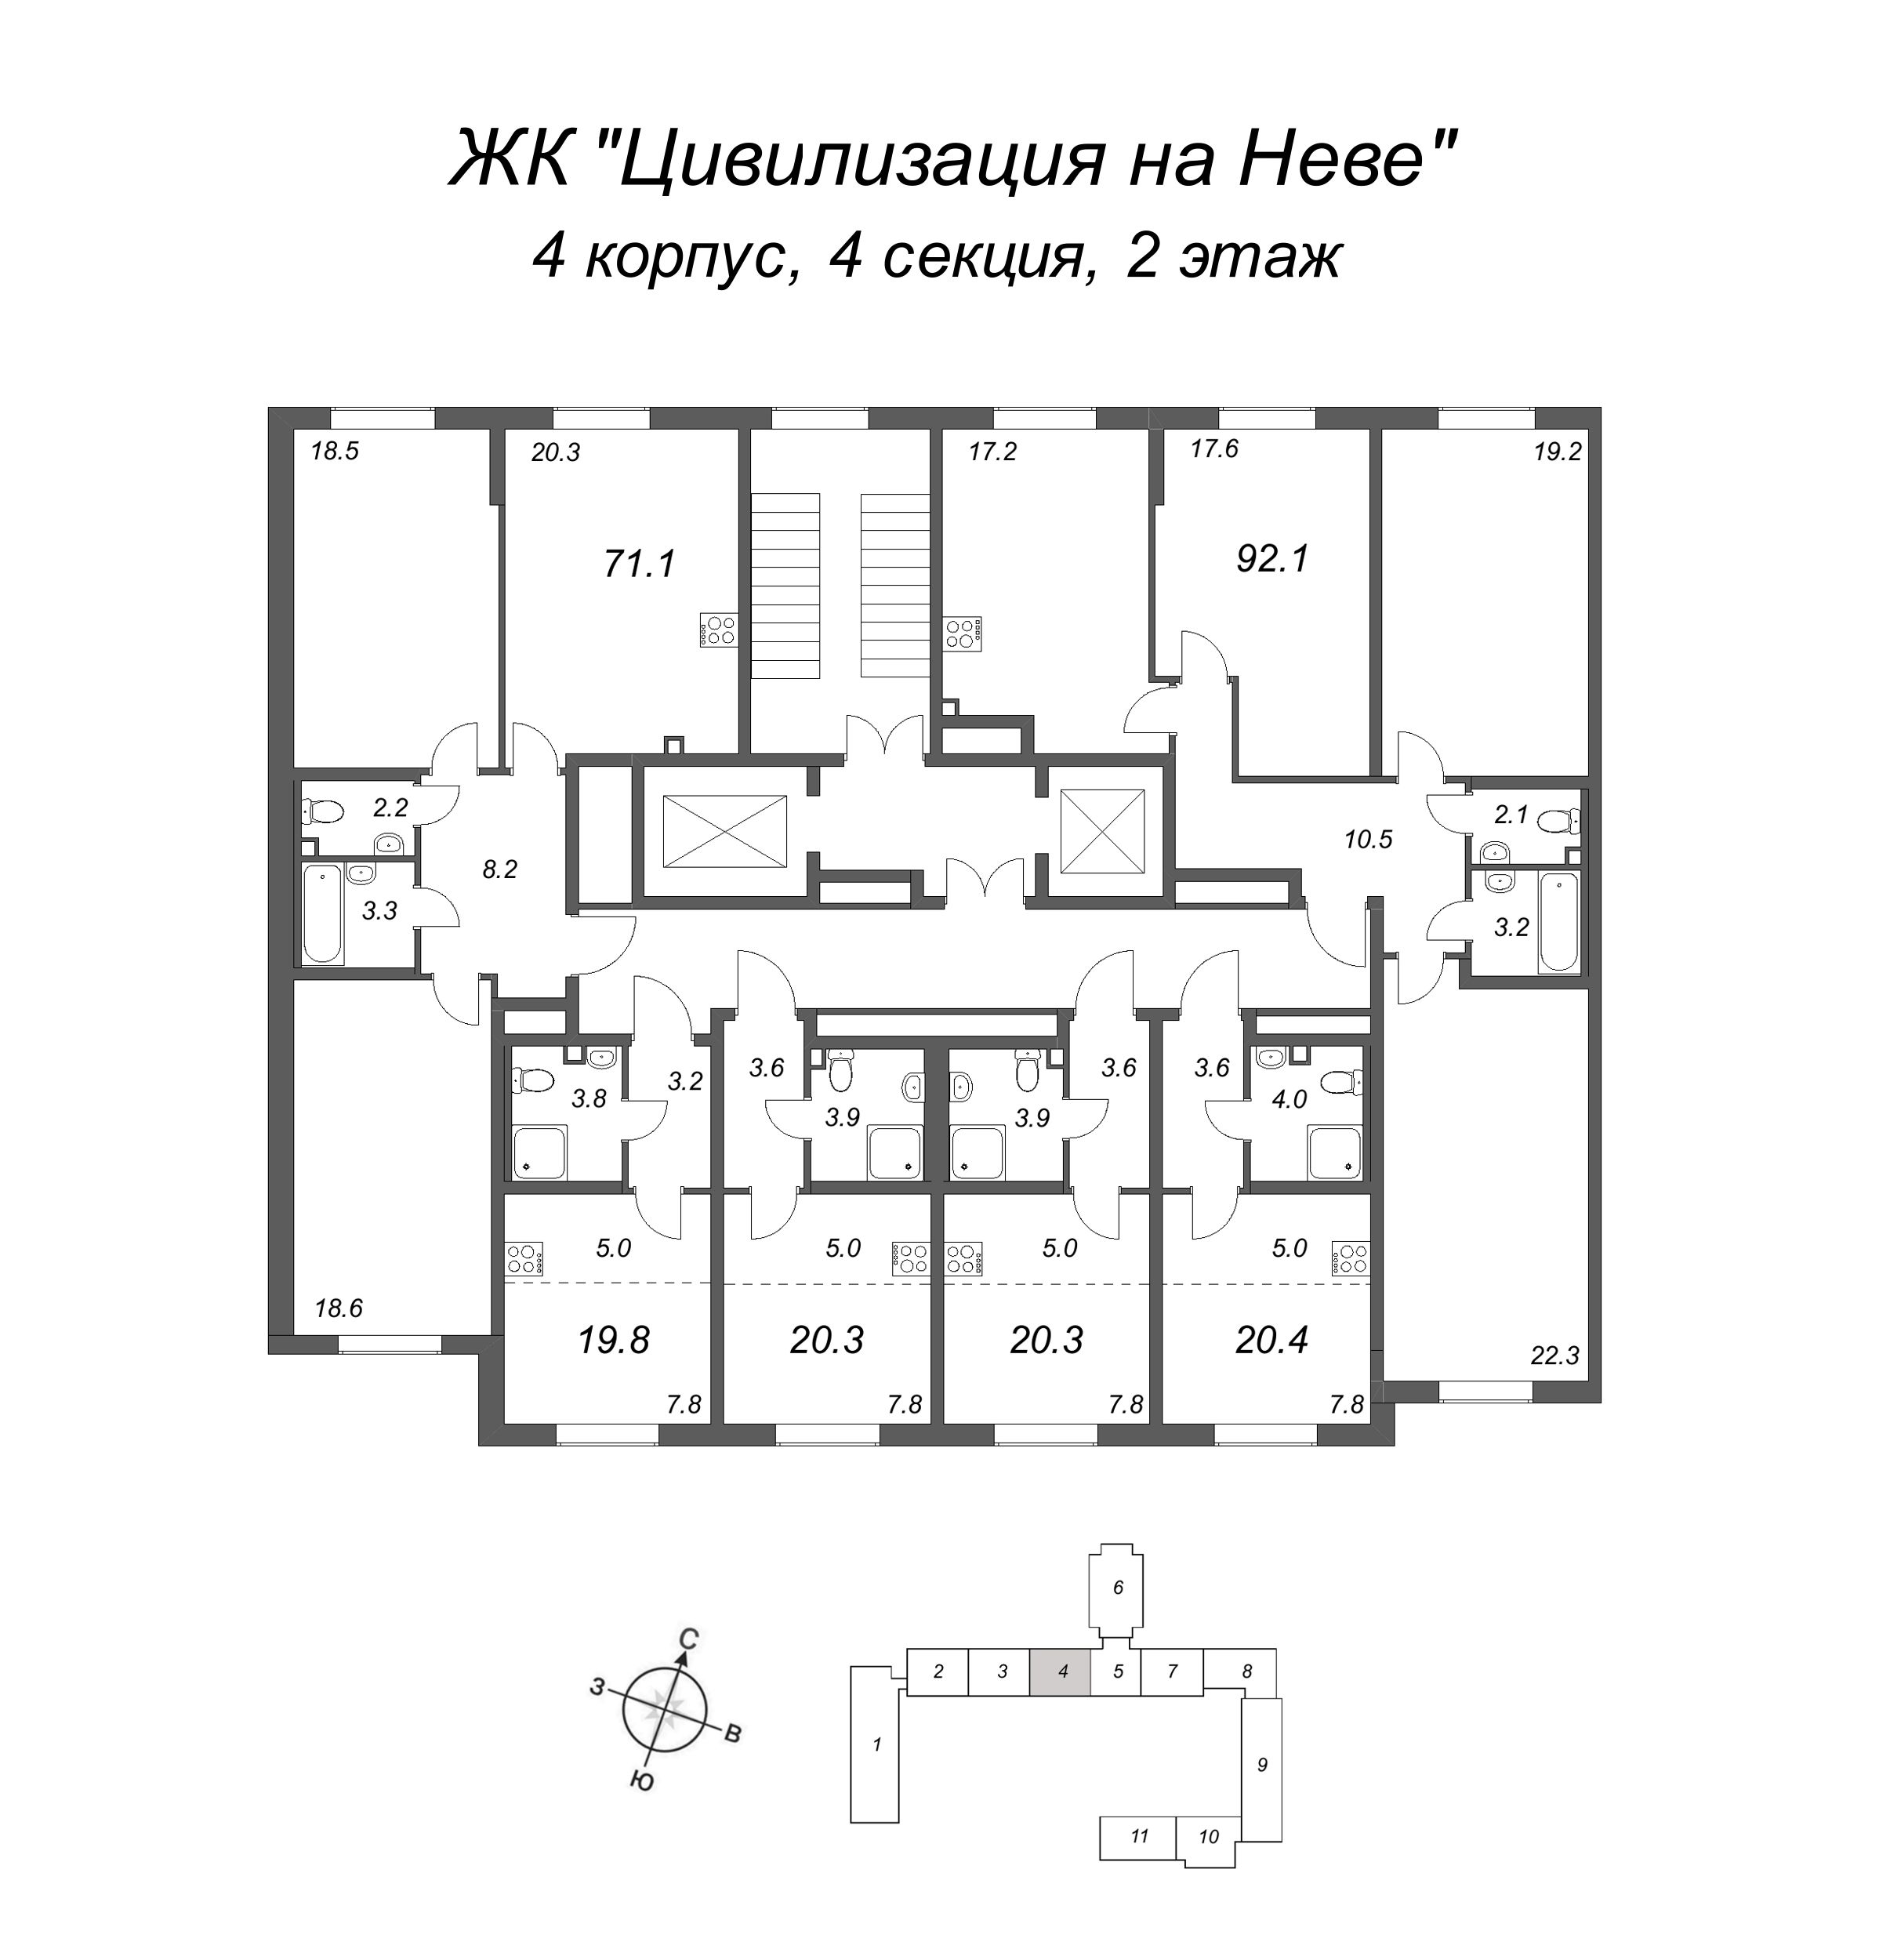 3-комнатная (Евро) квартира, 71.1 м² в ЖК "Цивилизация на Неве" - планировка этажа